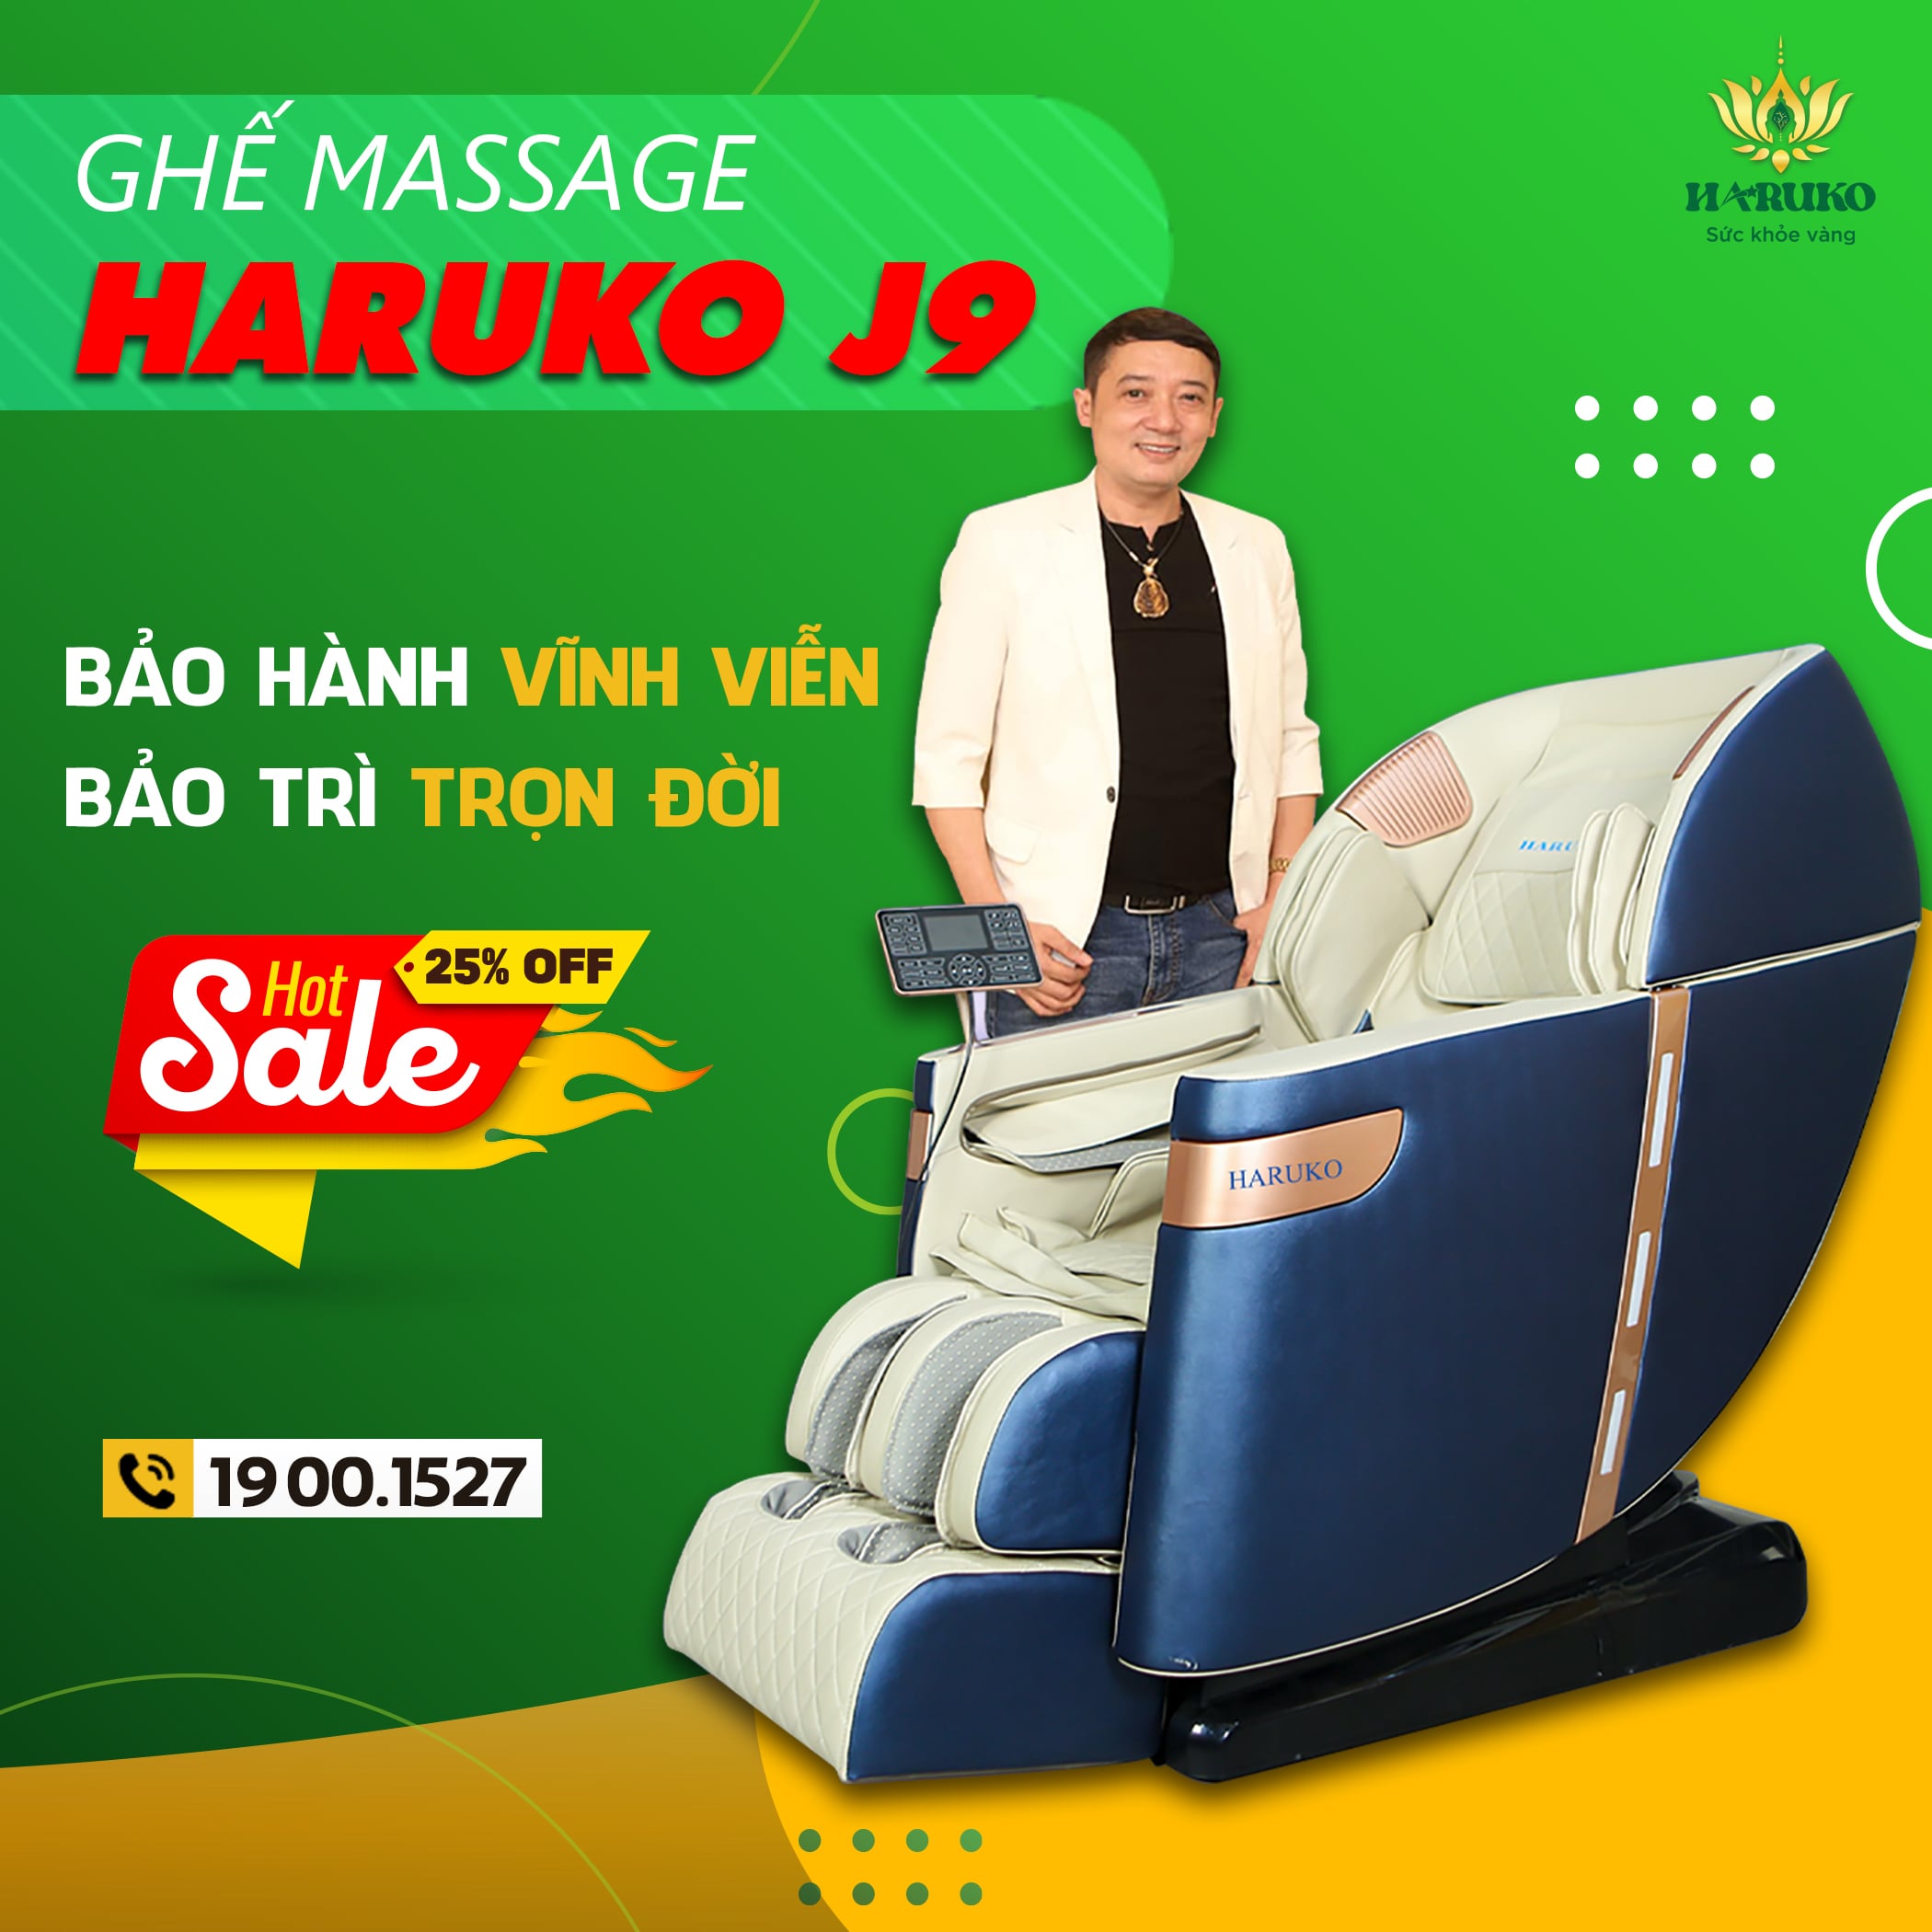 Ghế massage Haruko J9 được thiết kế hoàn toàn từ công nghệ Nhật Bản với những tính năng cao cấp được ưa thích bởi người dùng